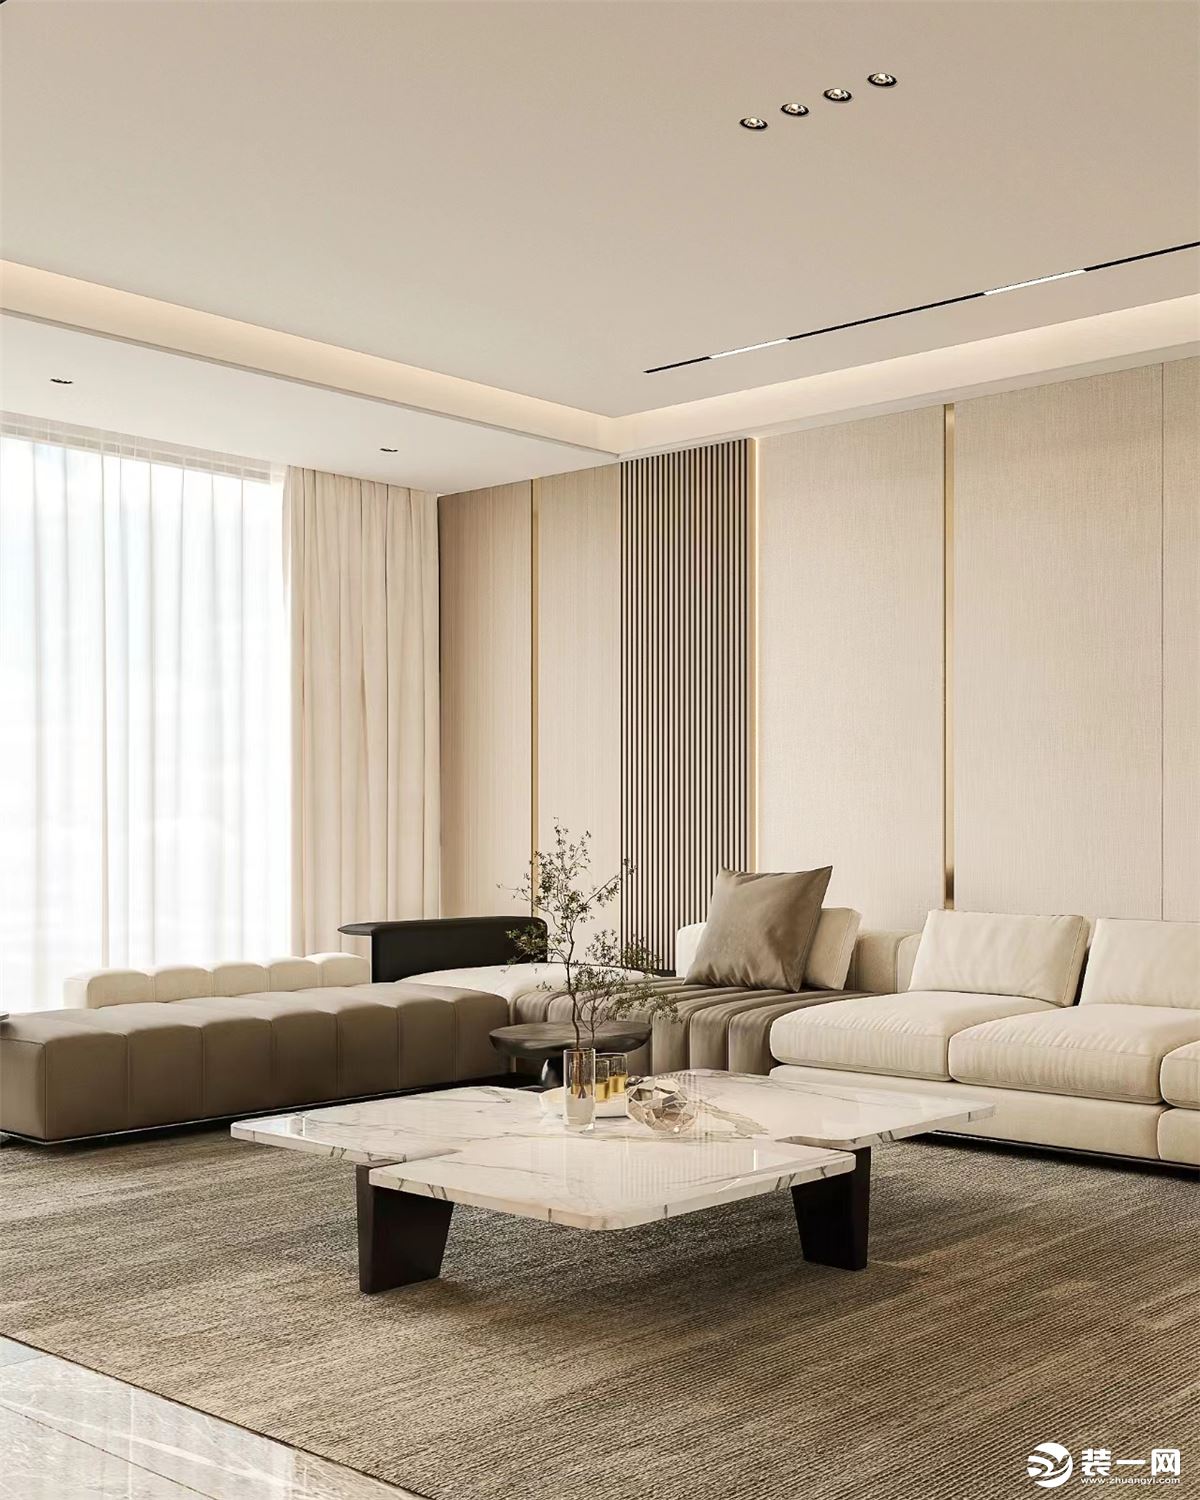 沙发墙一般也会采用同电视墙一样的材质或者墙板、皮革硬包等结合使用 也会镶嵌轻奢风代表性的元素金属线条